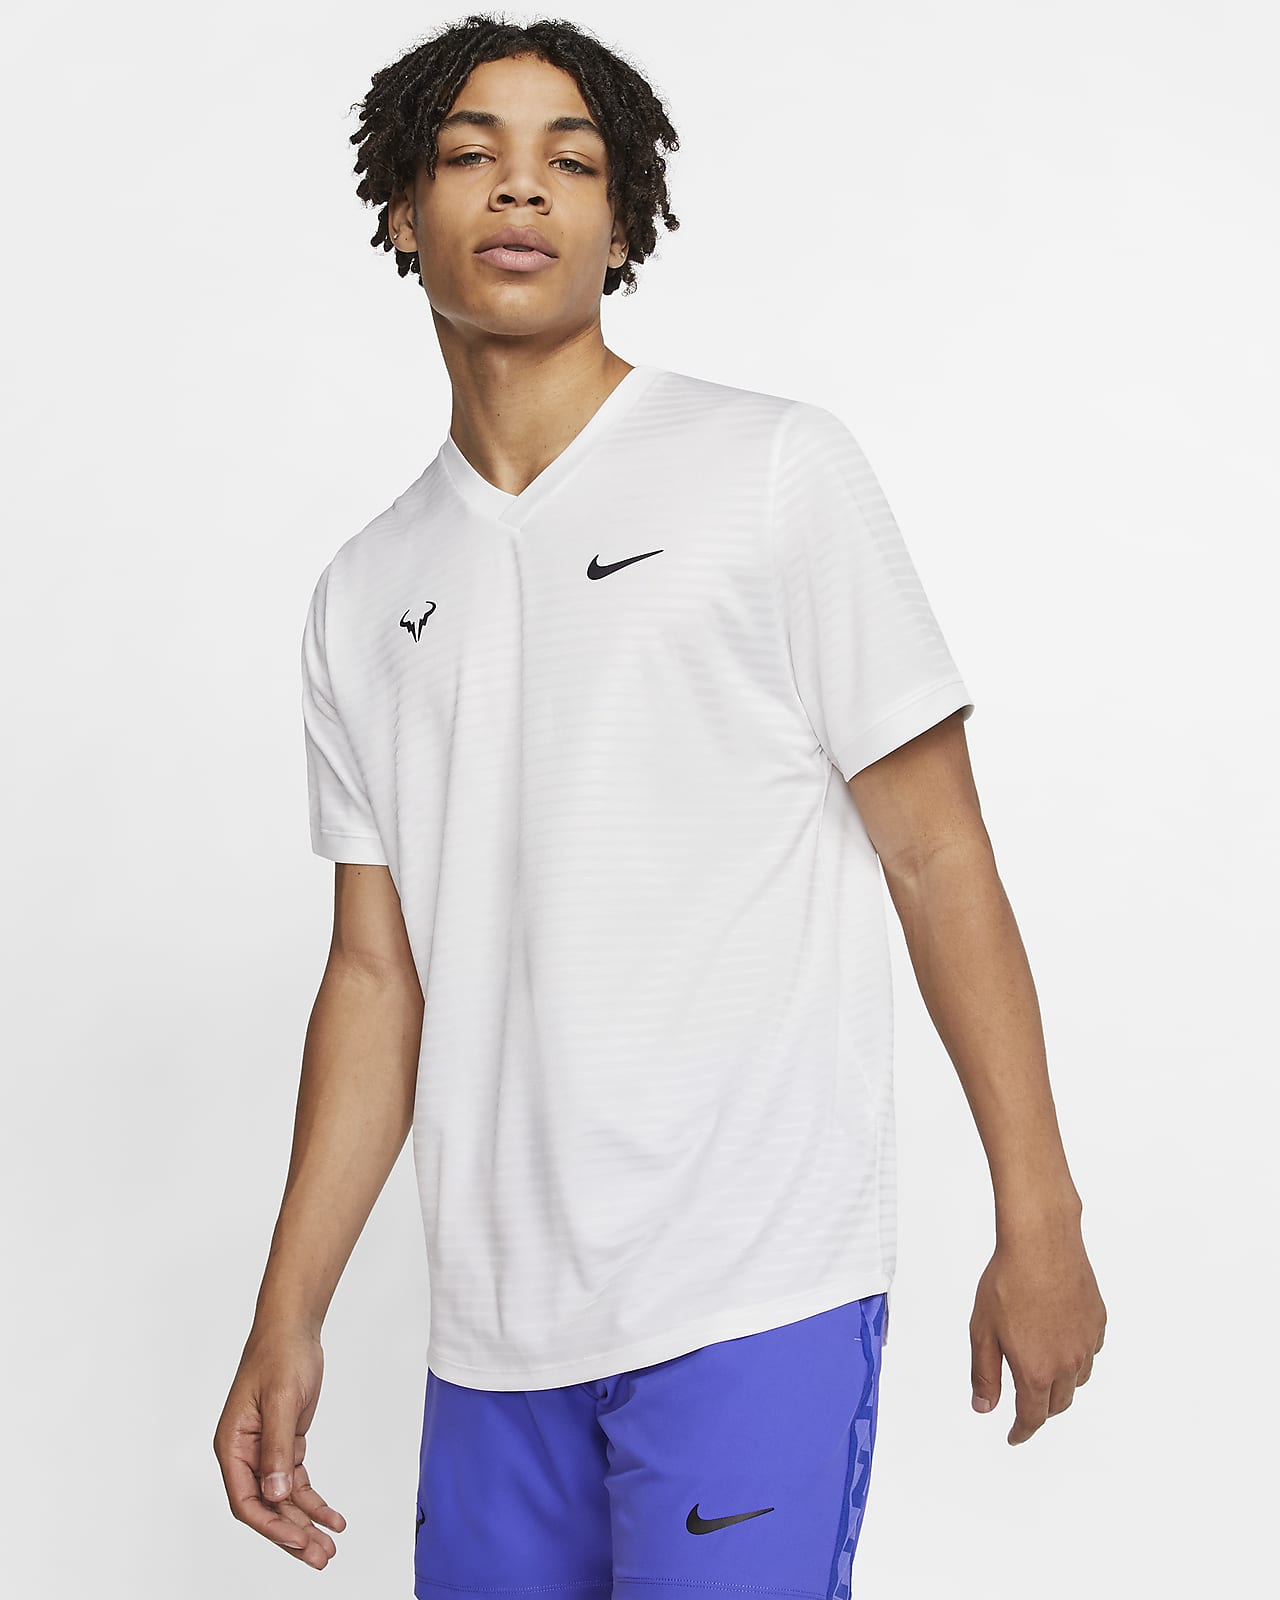 Short-Sleeve Tennis Top. Nike CA